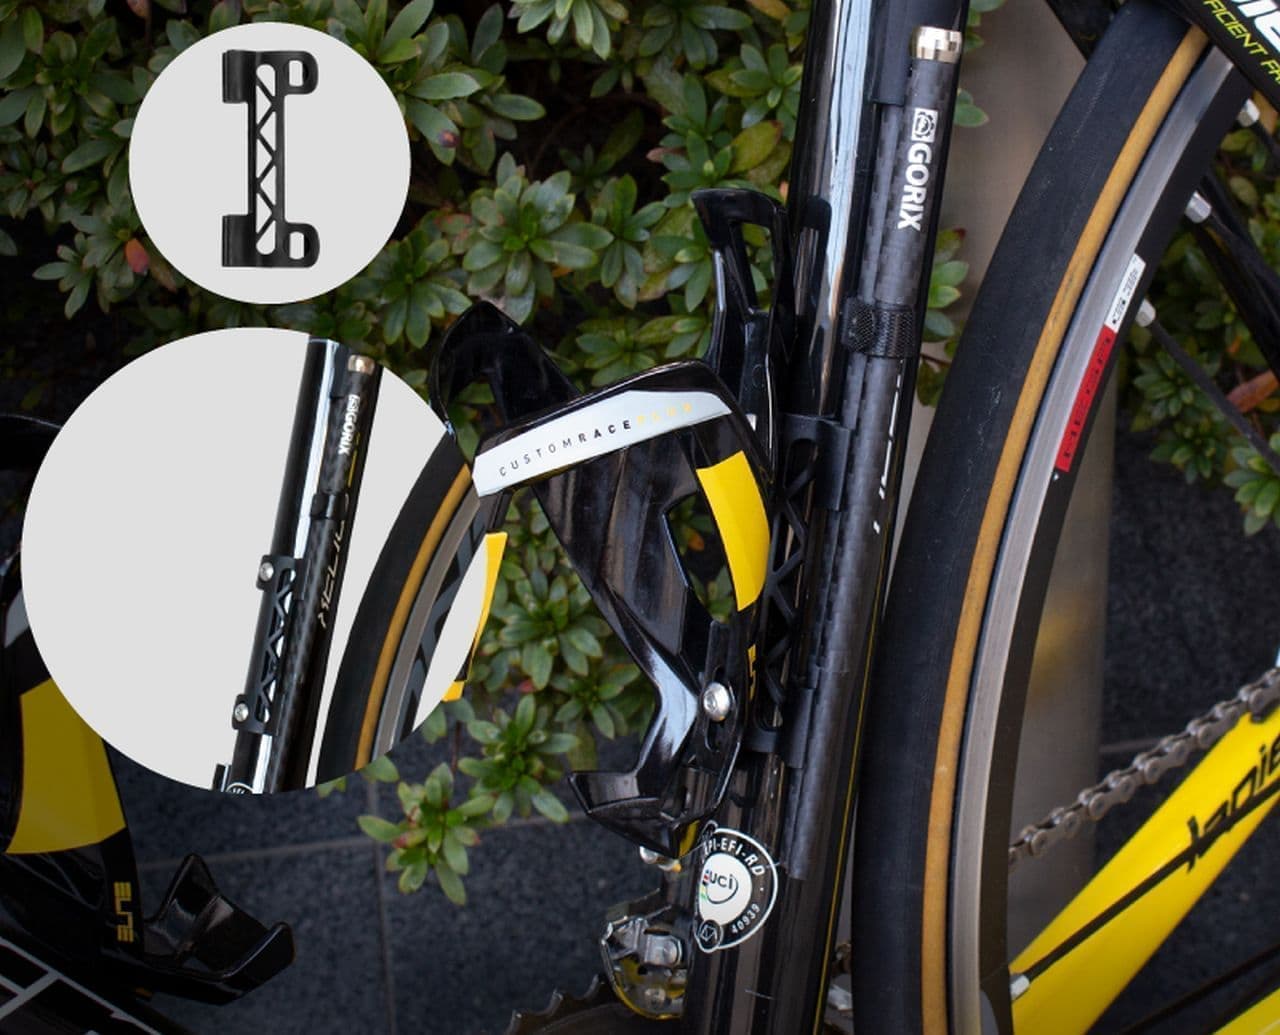 カーボンファイバー製の自転車用折畳み携帯スタンド「GORIX」から発売 立て掛ける場所がないときに